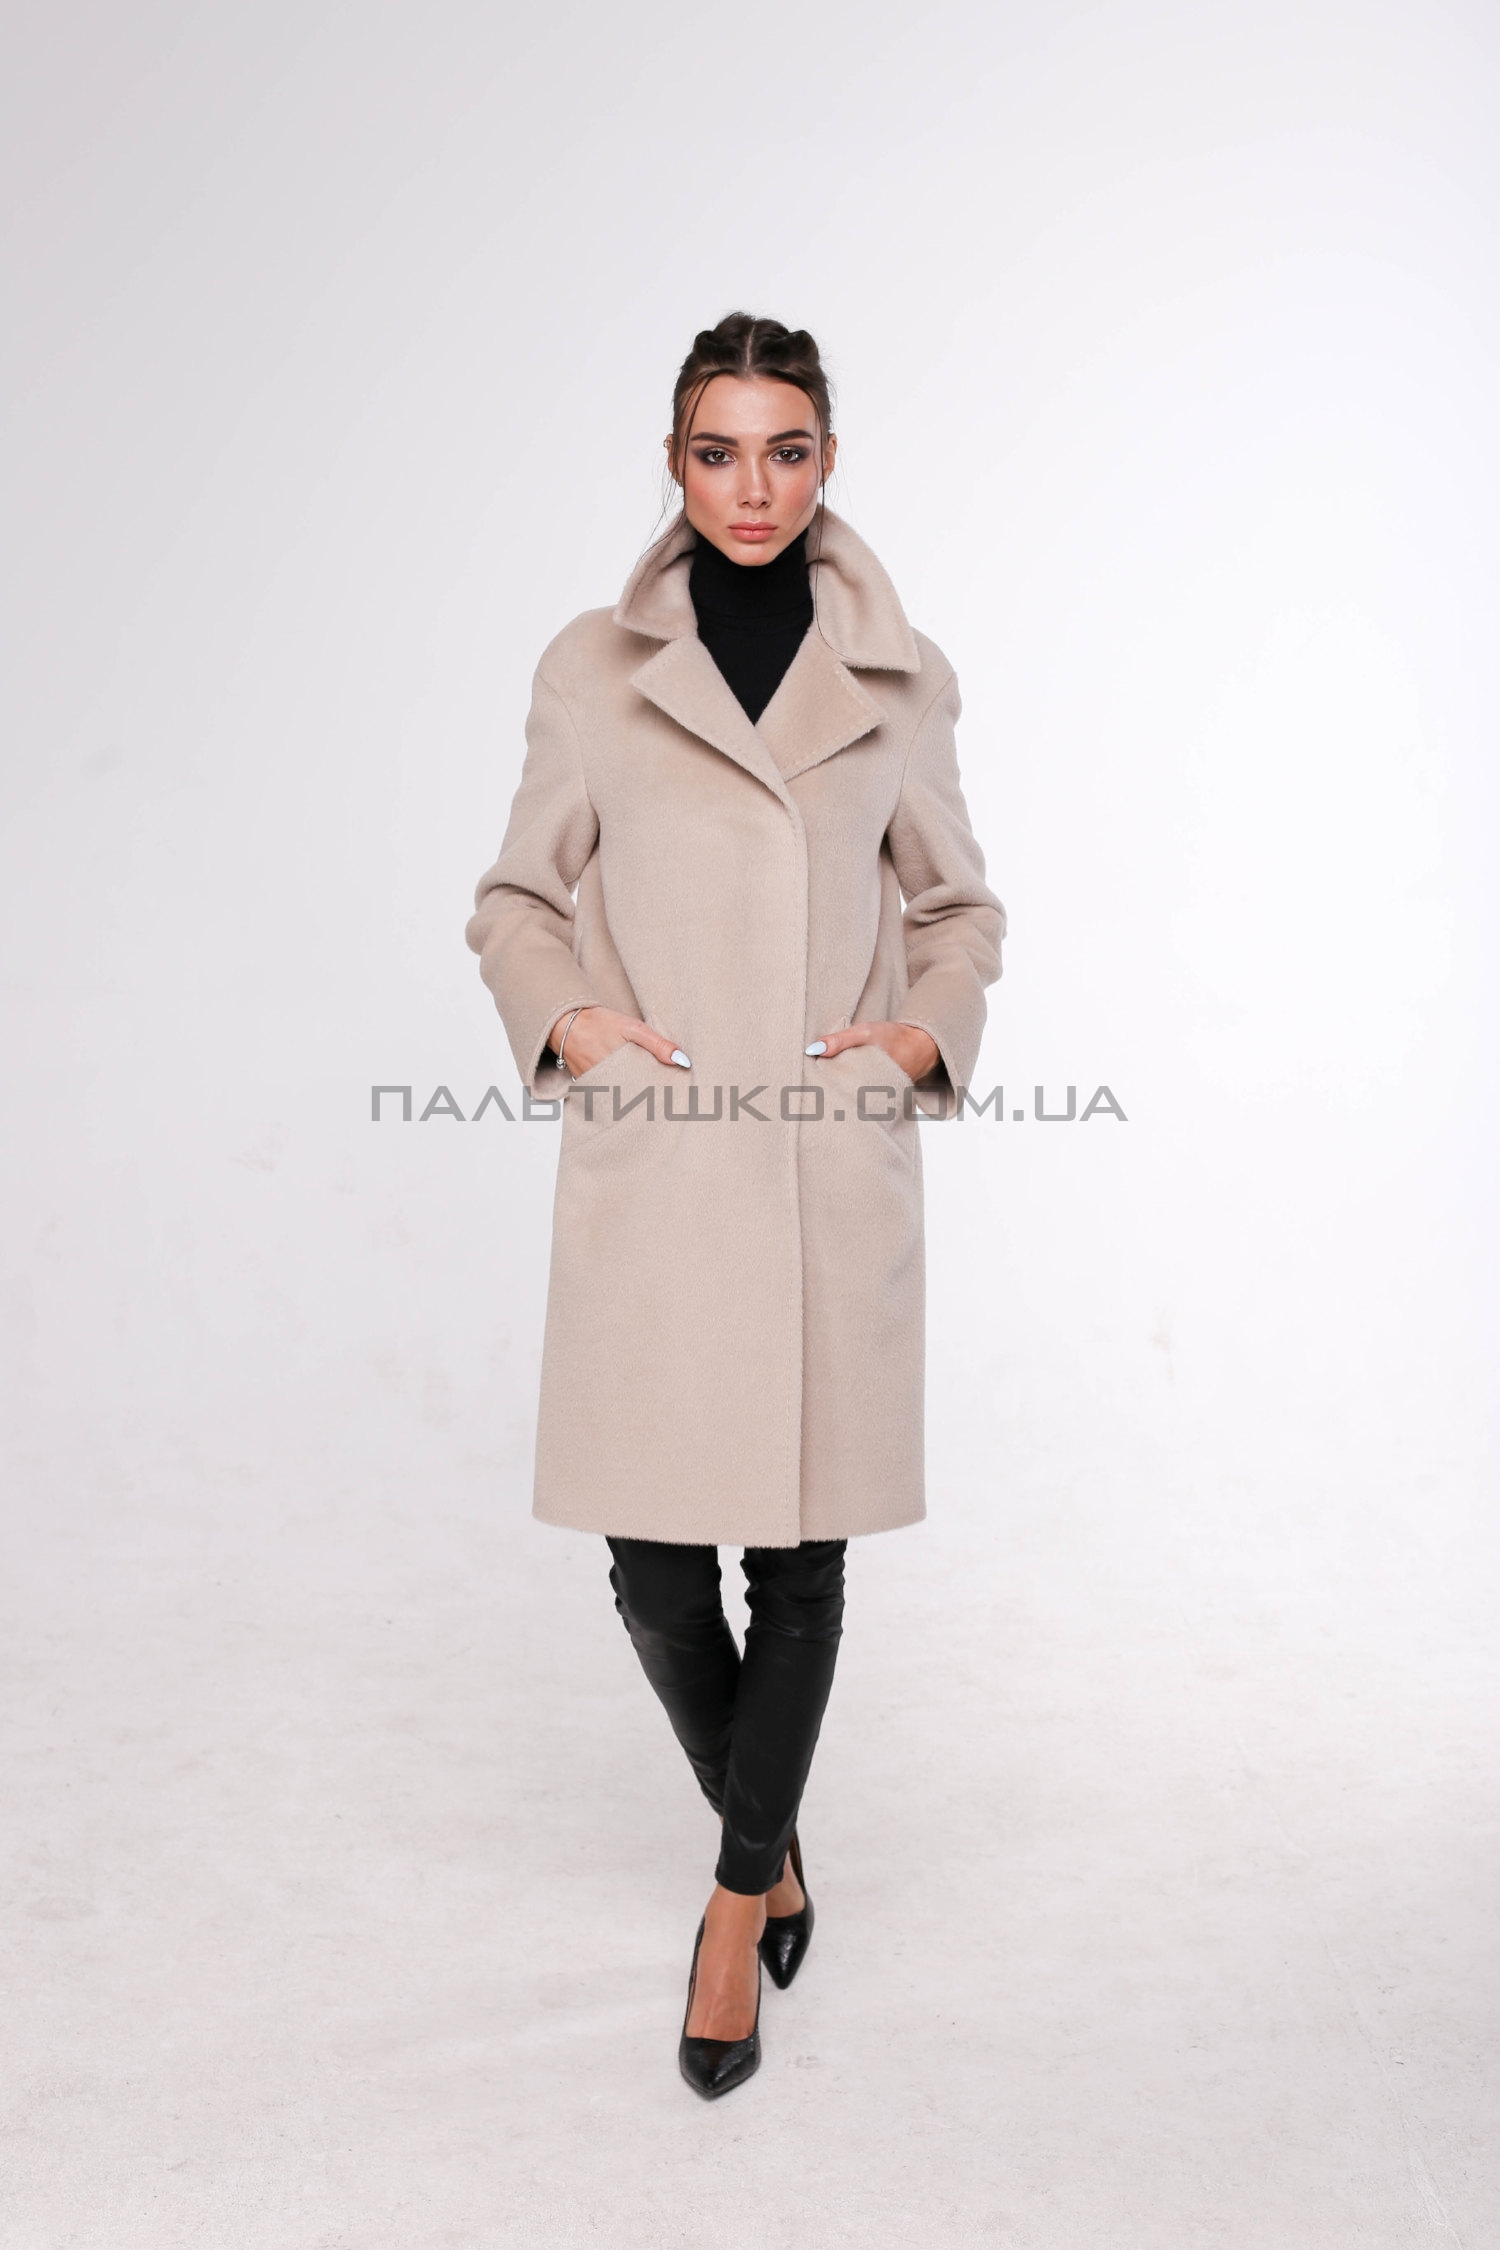  Жіноче пальто № 115